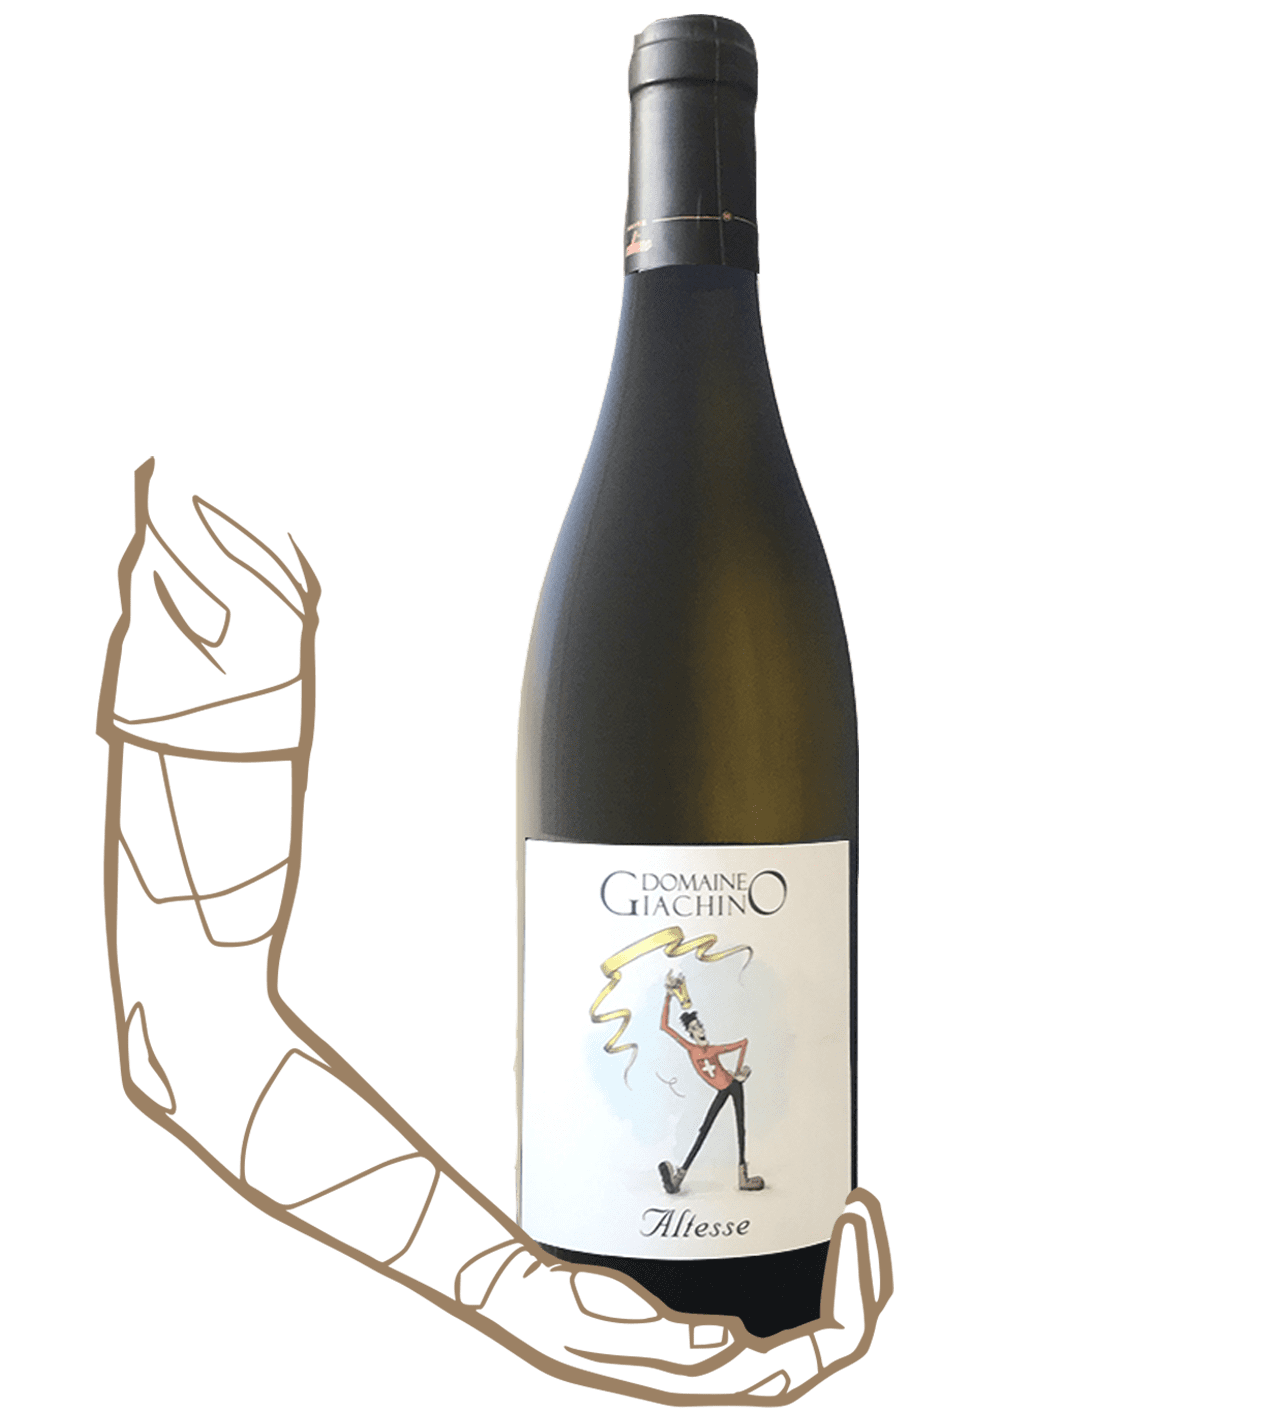 Altesse du Domaine Giachino est un Vin blanc naturel